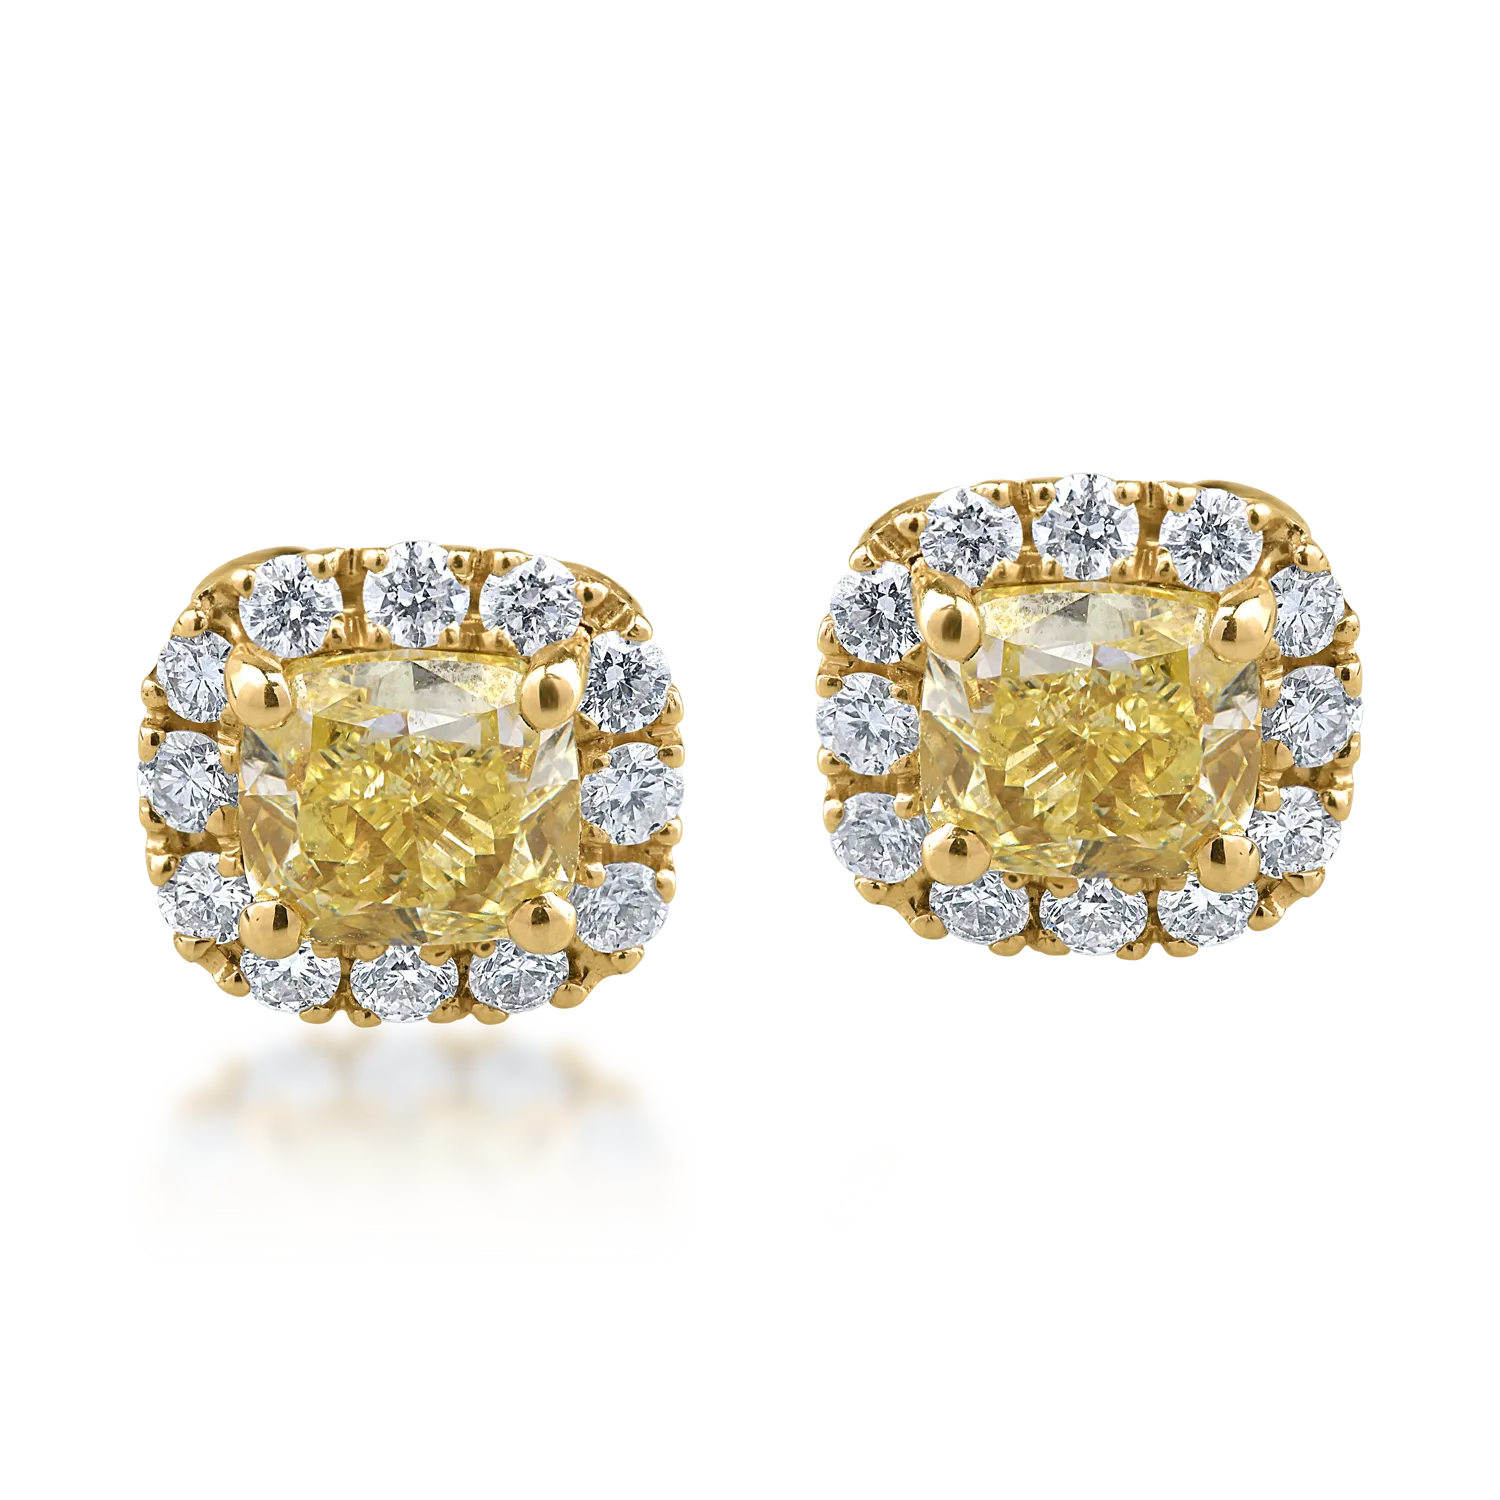 Kolczyki z żółtego złota z żółtymi fantazyjnymi diamentami o masie 1.22ct i bezbarwnymi diamentami o masie 0.38ct